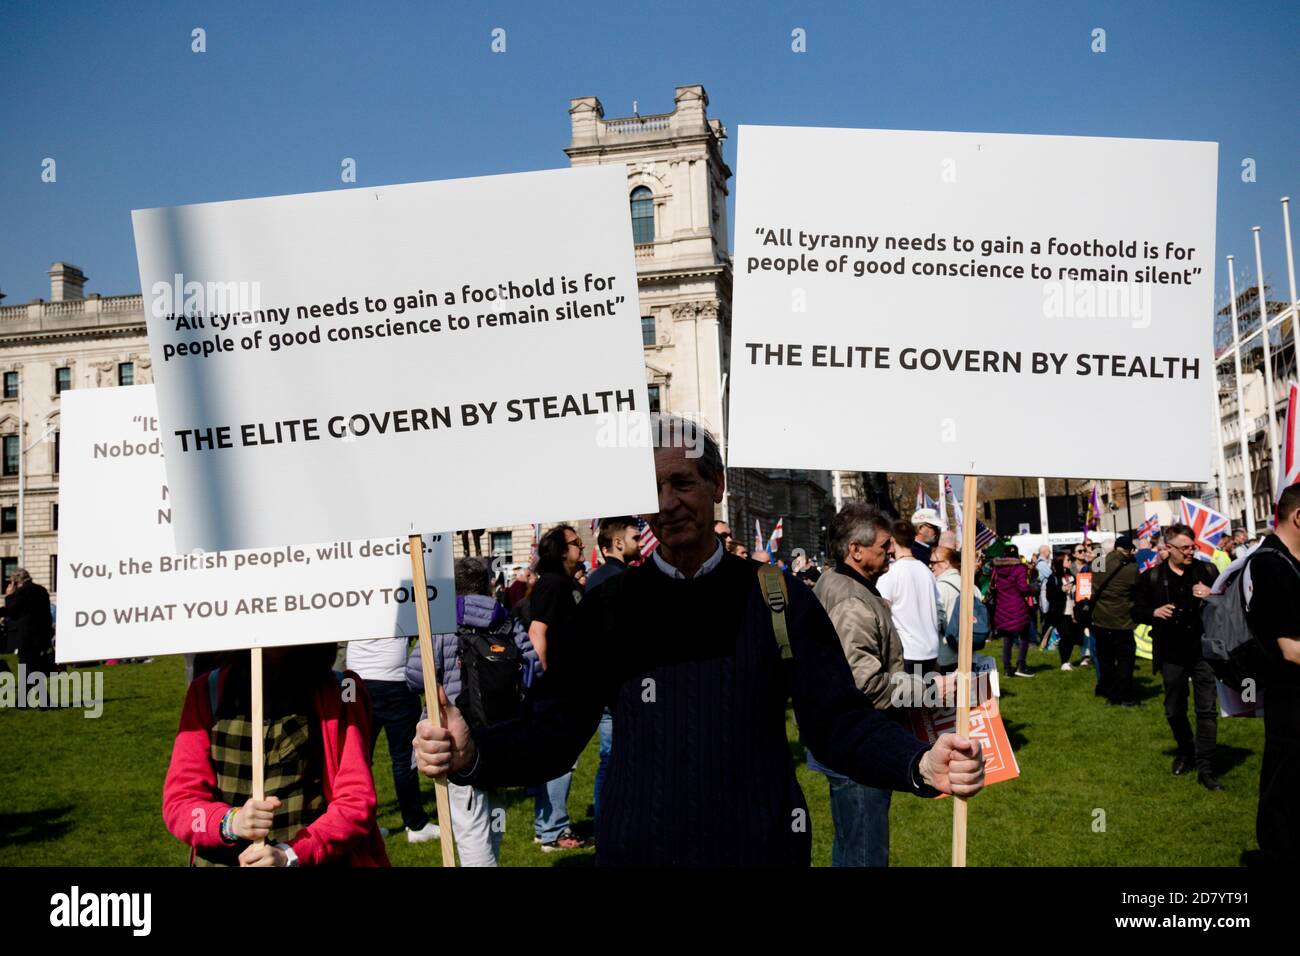 Londra, Regno Unito, 29 marzo 2019:- manifestanti Pro Brexit fuori dal Parlamento britannico il giorno in cui il Regno Unito avrebbe dovuto lasciare l’Unione europea Foto Stock